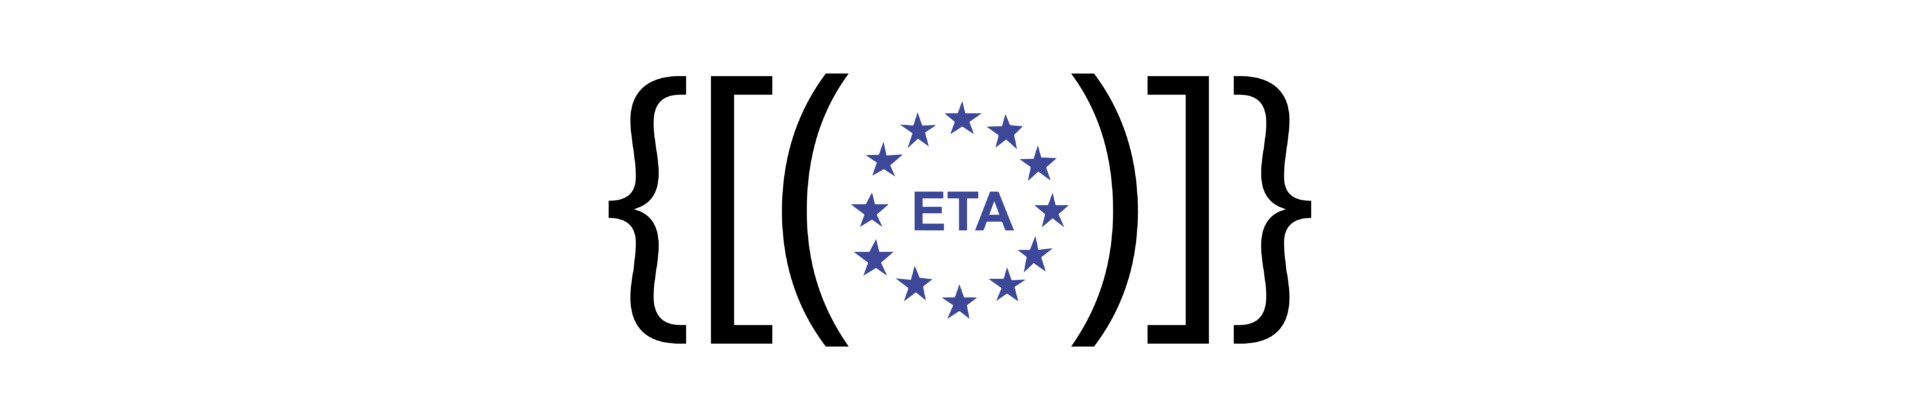 Chiarimento Cortexa sull'ETA del Sistema a Cappotto